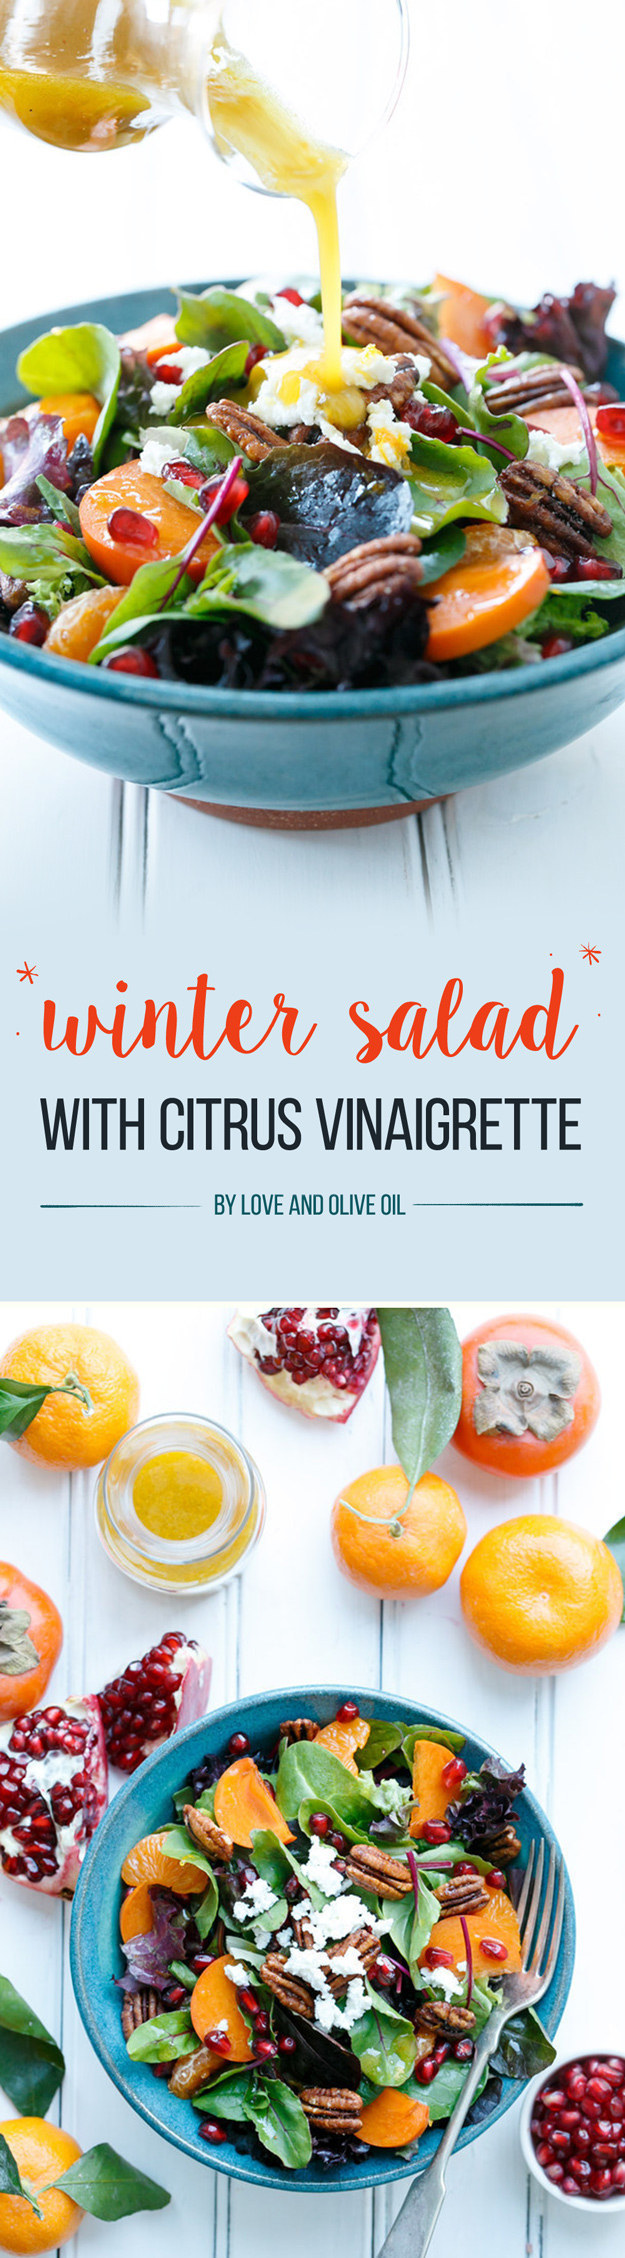 Winter Salad with Citrus Vinaigrette